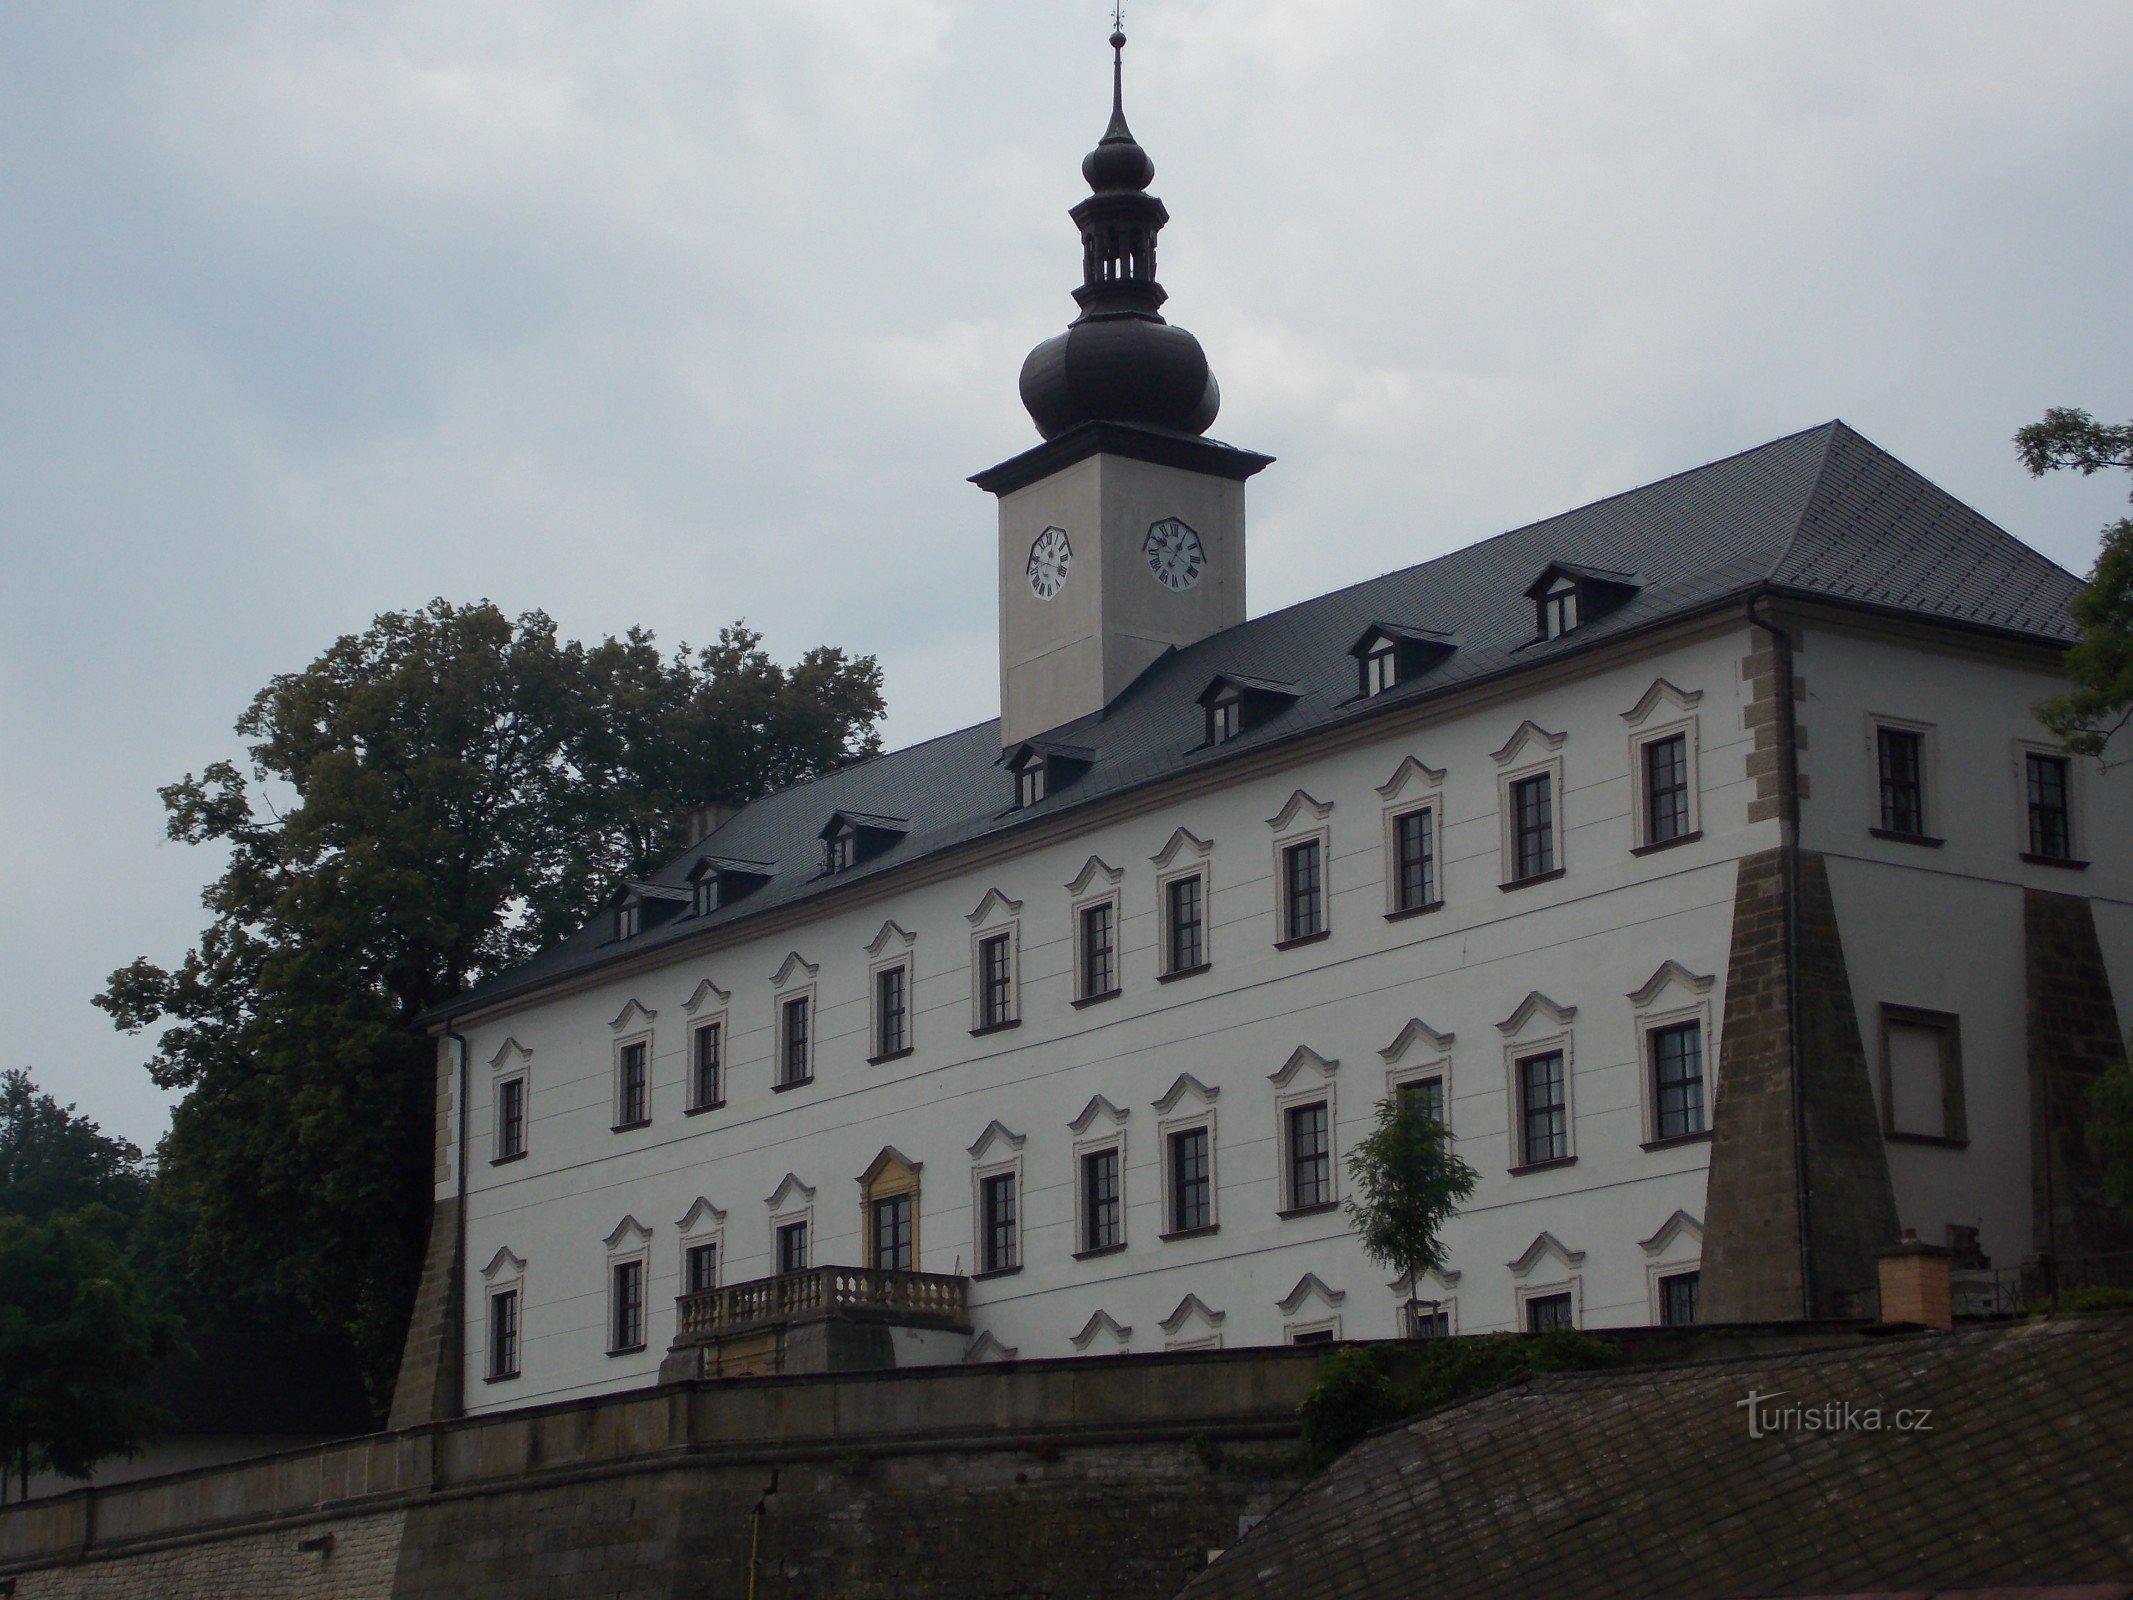 Castle in Letohrad